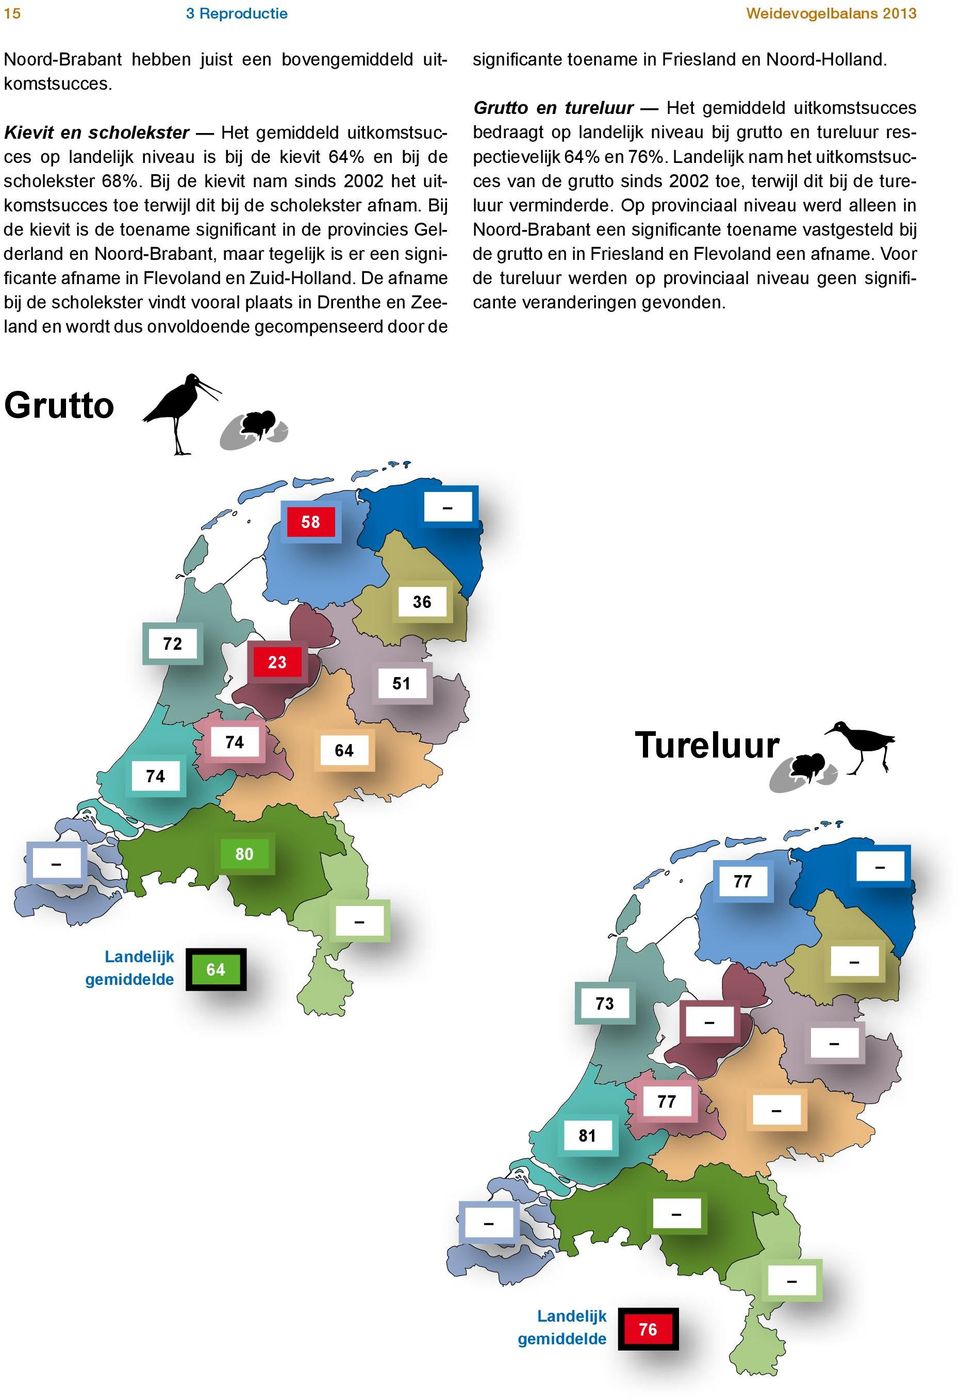 Bij de kievit is de toename significant in de provincies Gelderland en Noord-Brabant, maar tegelijk is er een significante afname in Flevoland en Zuid-Holland.